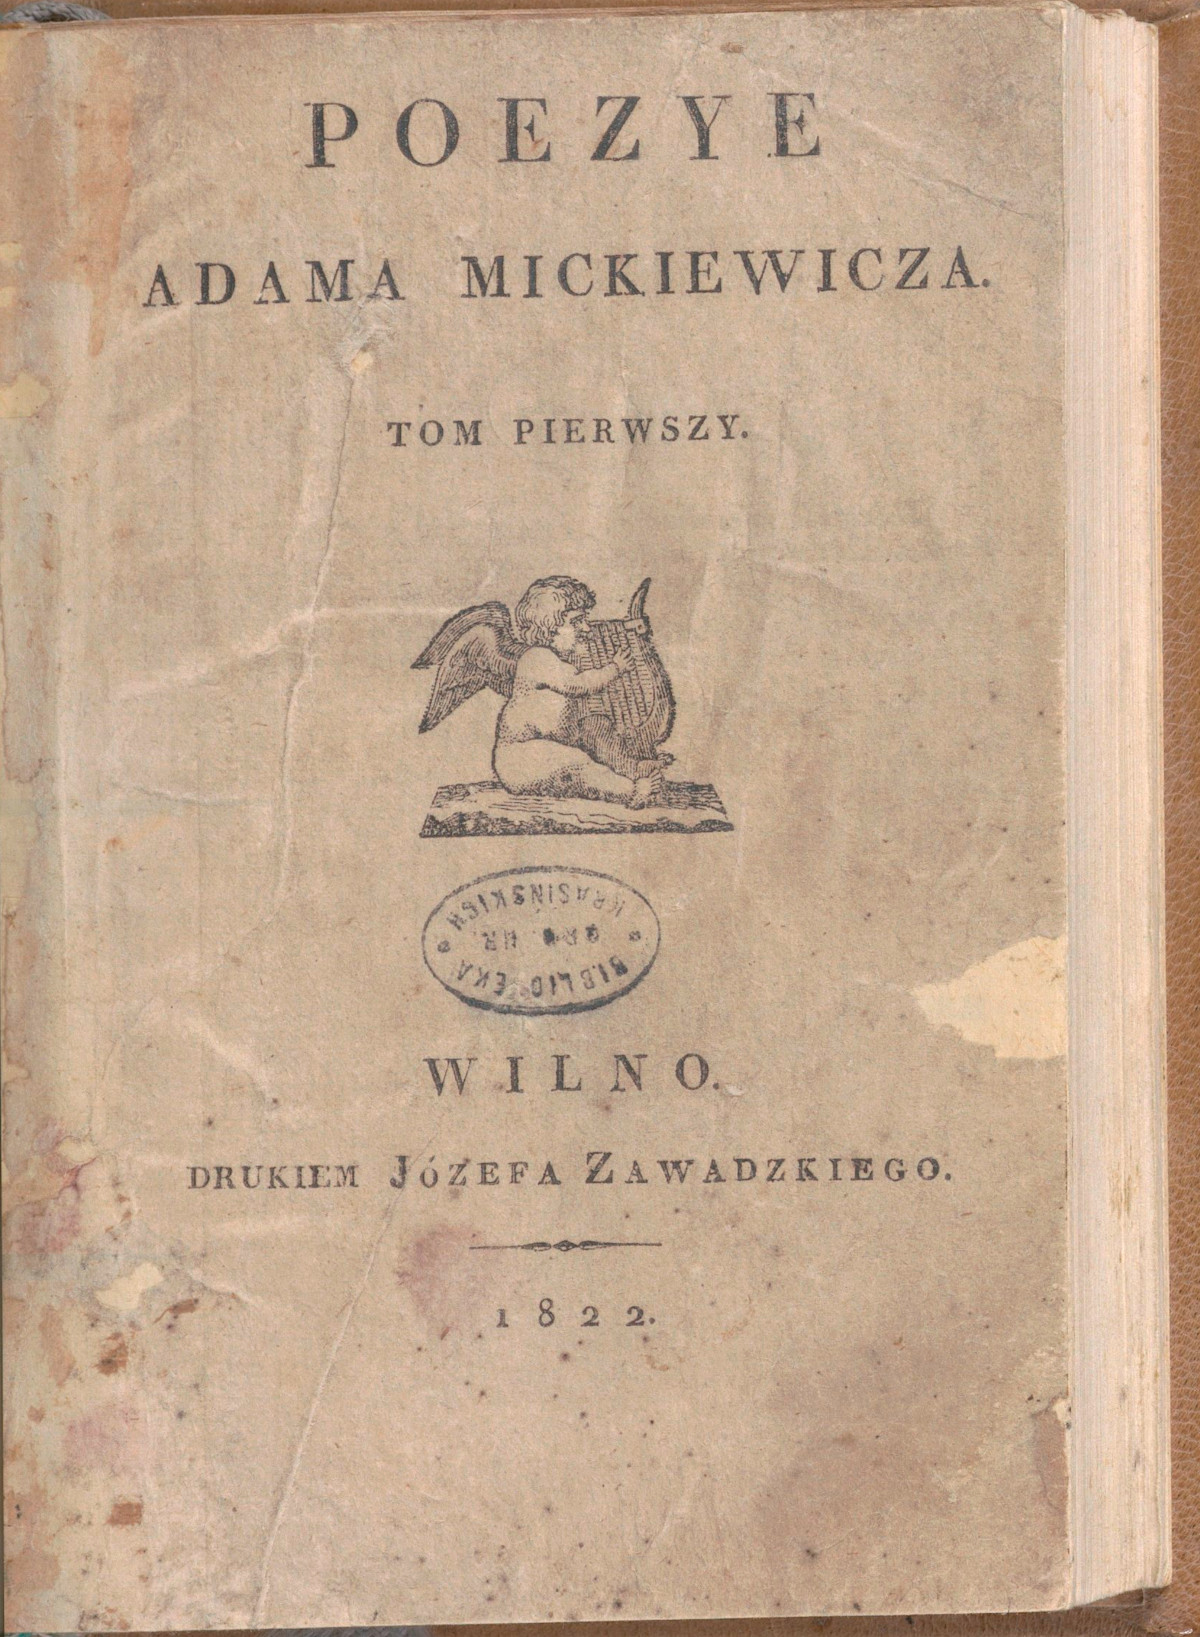 Strona tytułowa 1. tomu "Poezji" Adama Mickiewicza, Wilno 1822 r. Fot. Polona/domena publiczna 